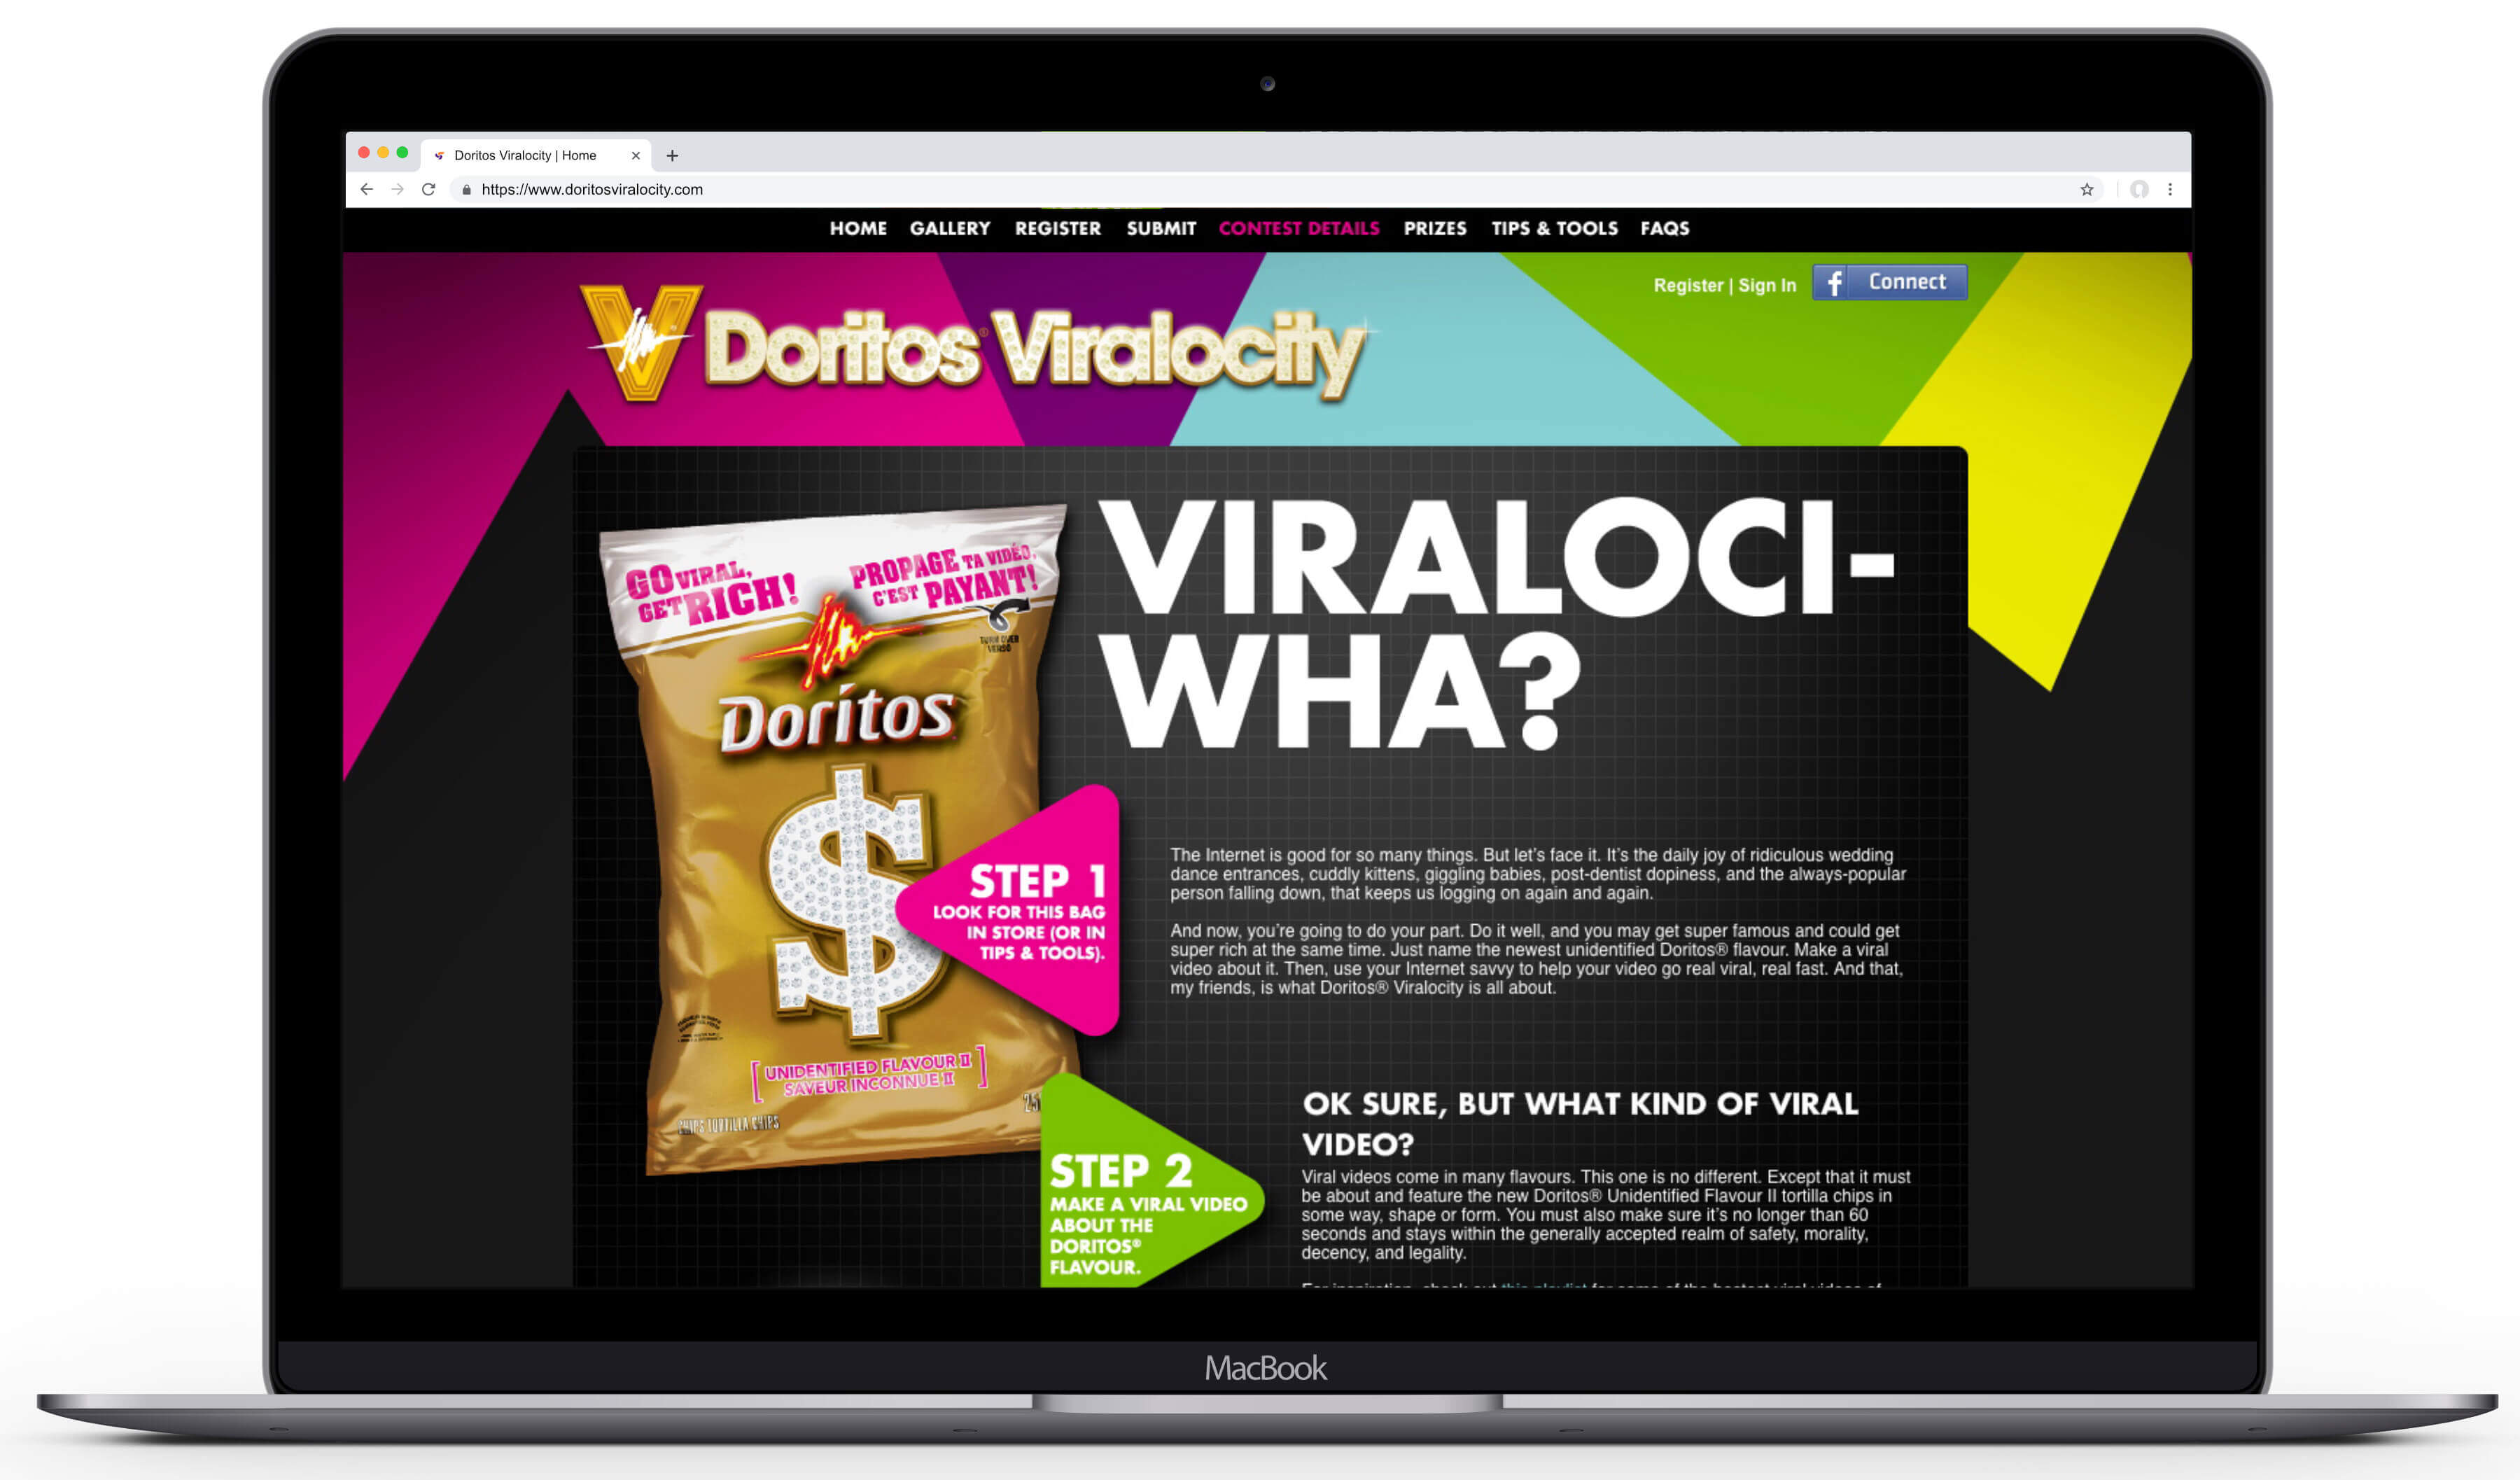 viralocity-screens-macbook-02-details